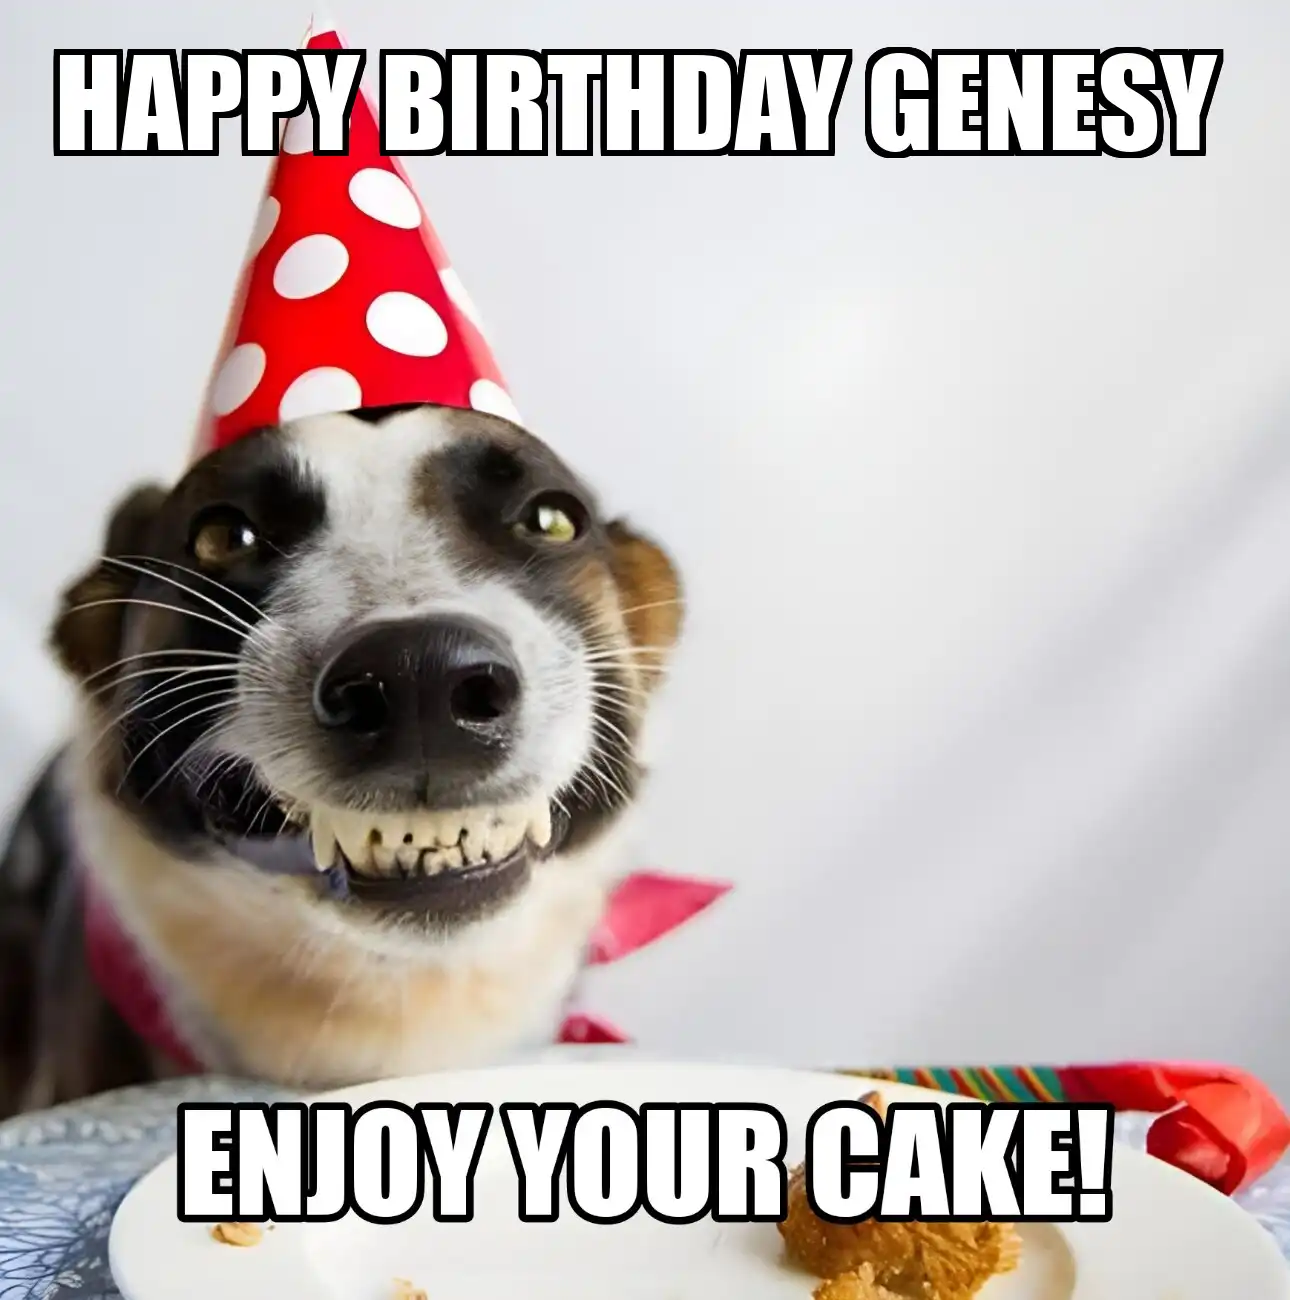 Happy Birthday Genesy Enjoy Your Cake Dog Meme